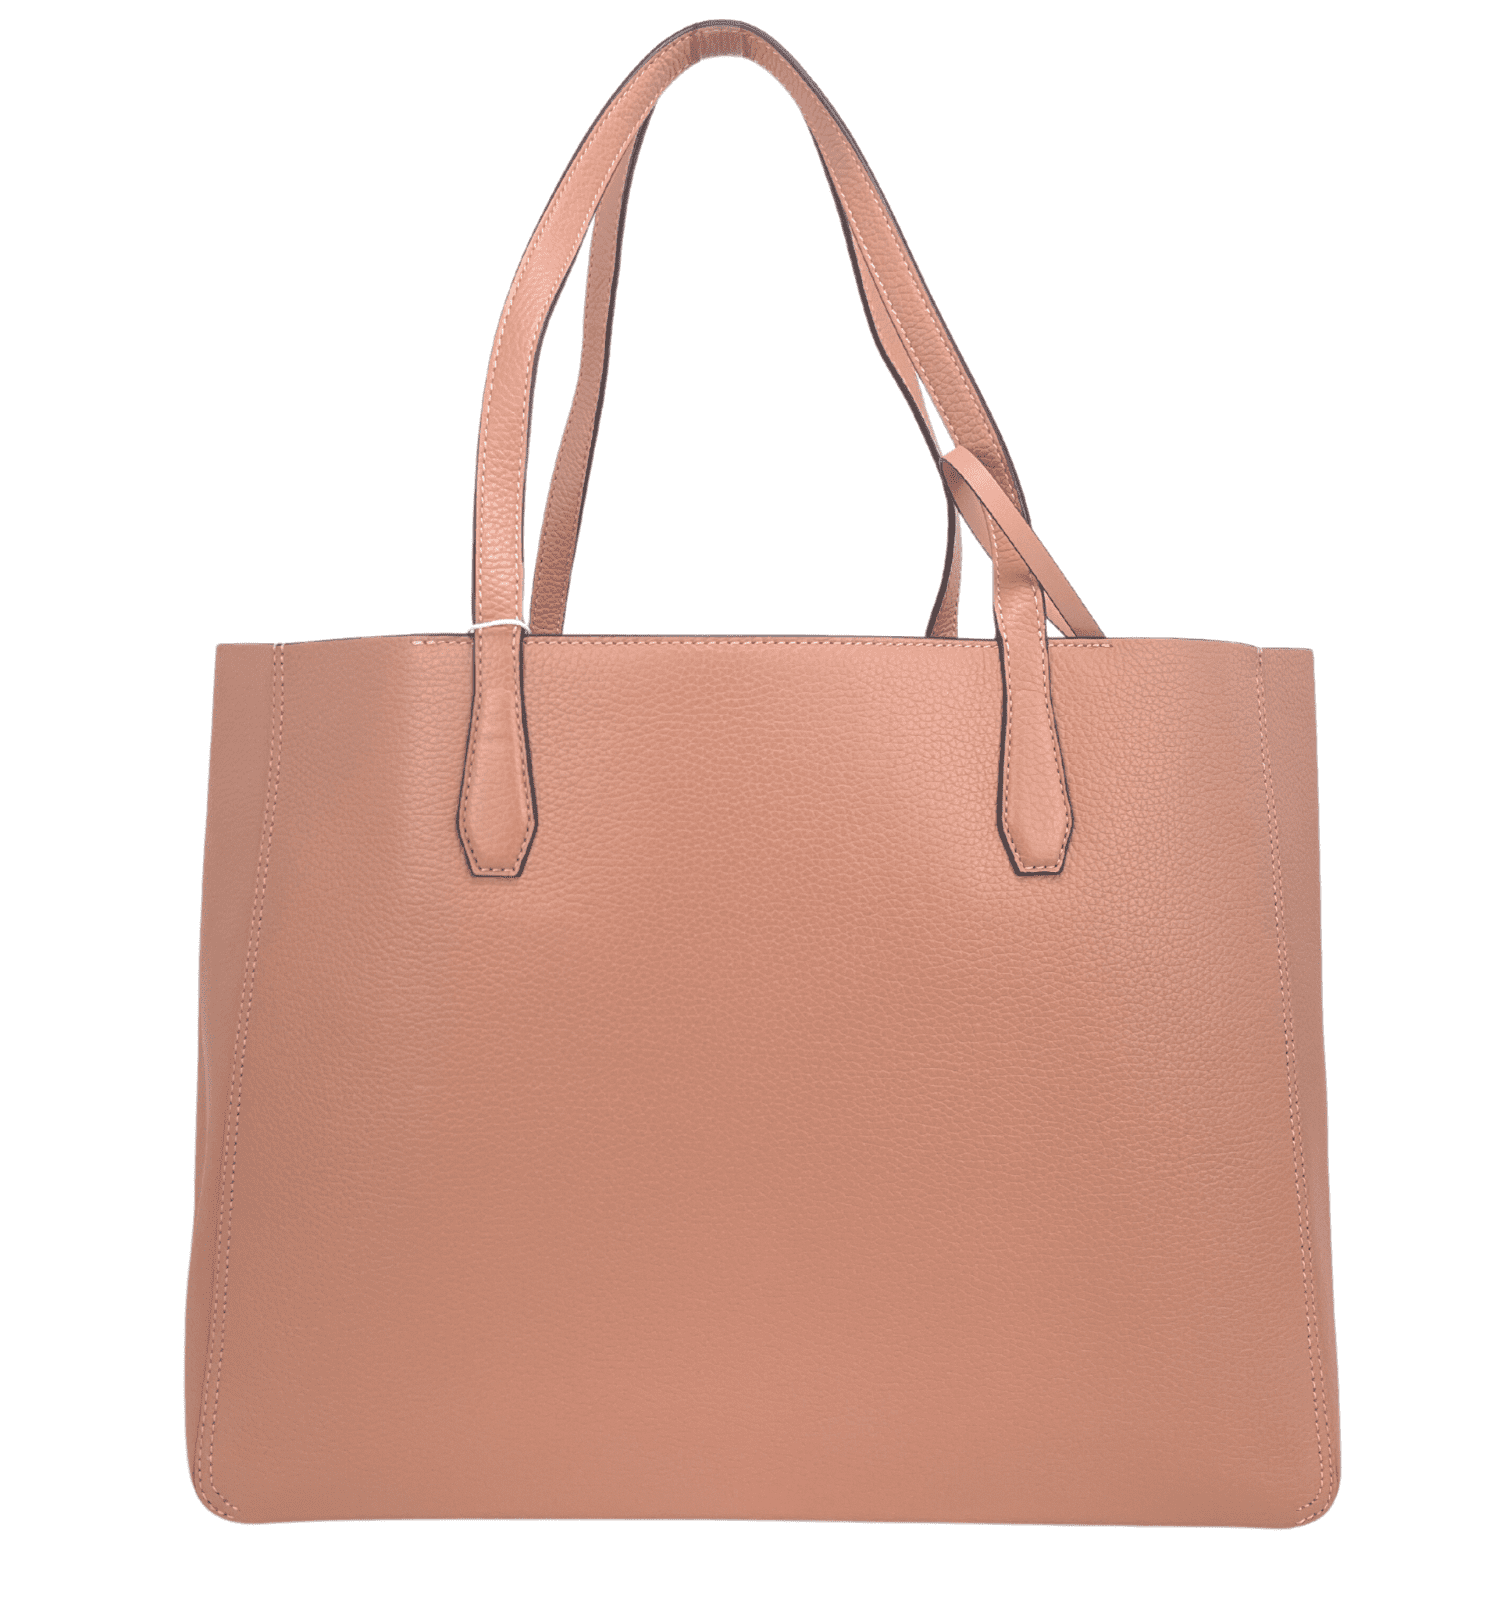 Tan Lee Radziwill petite leather handbag | Tory Burch | MATCHES UK